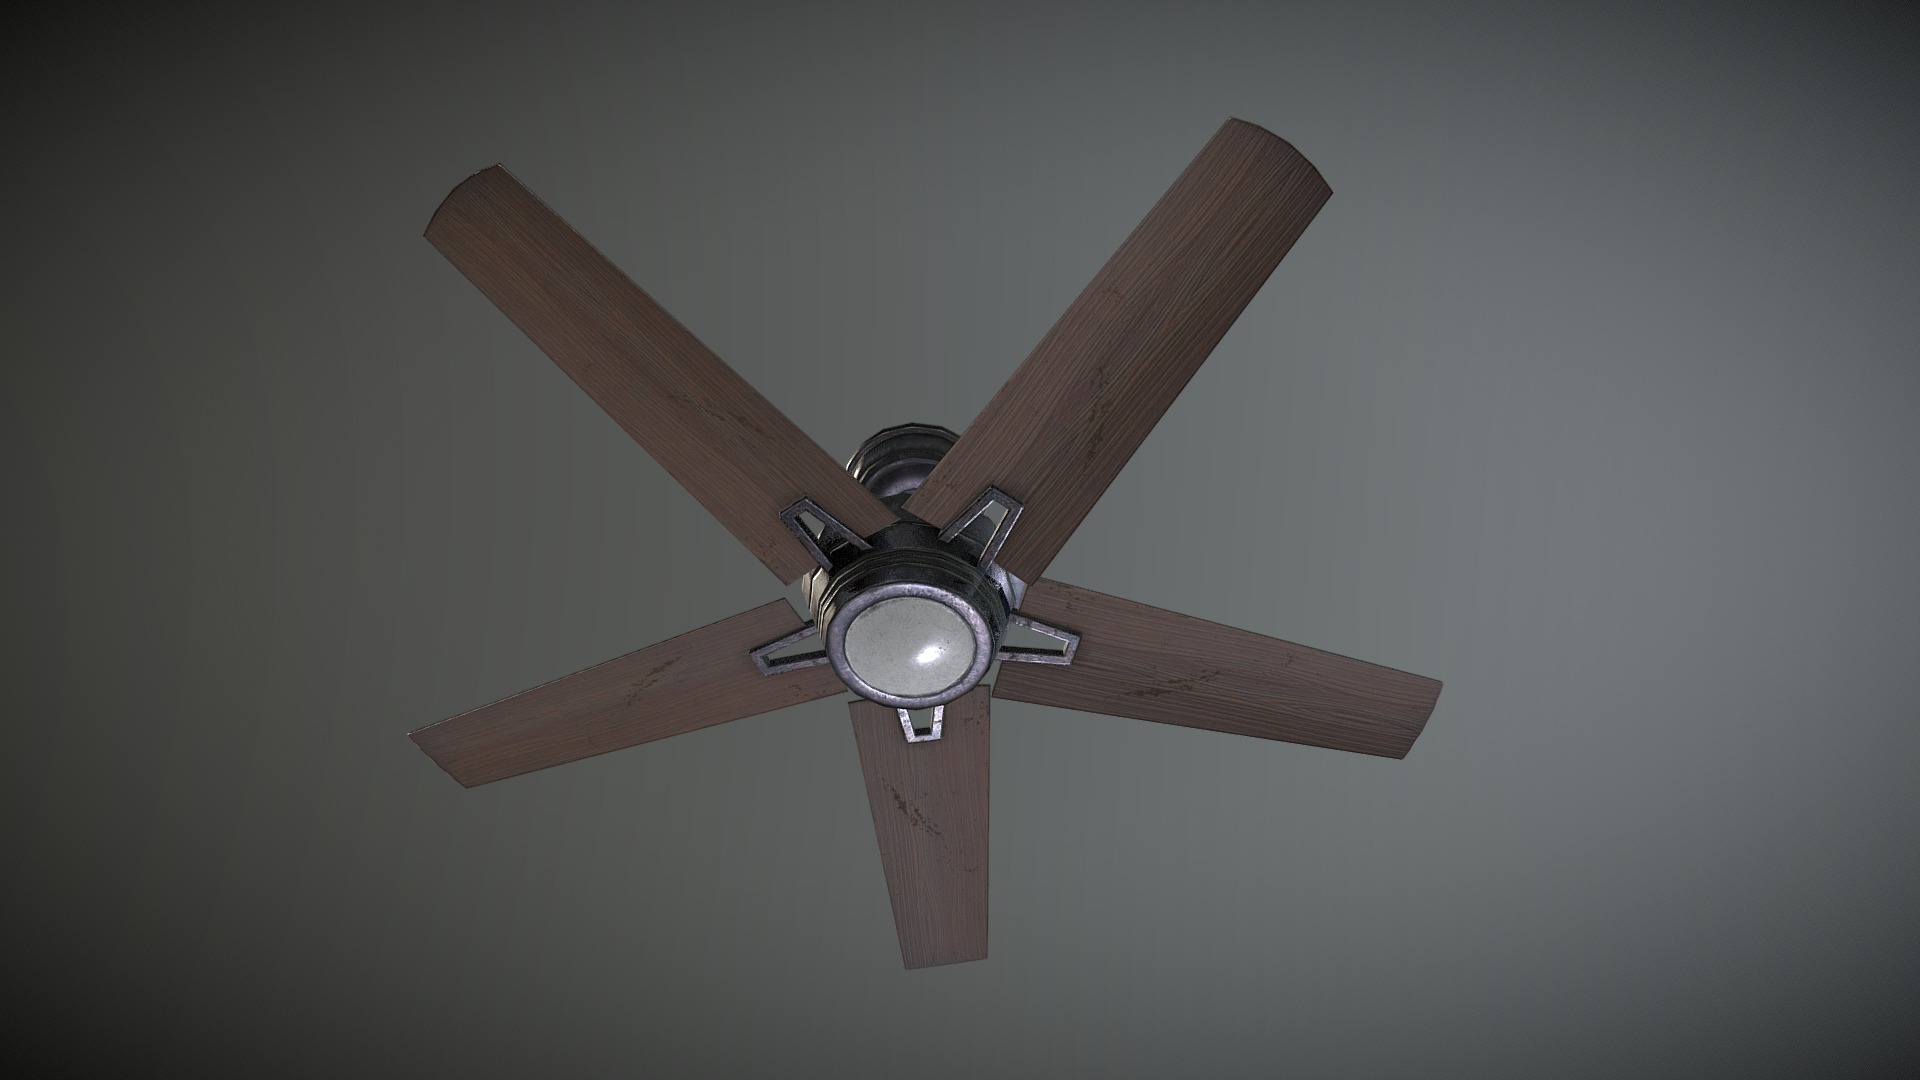 Game prop - Ceiling fan - 3D model by n1k 3d model